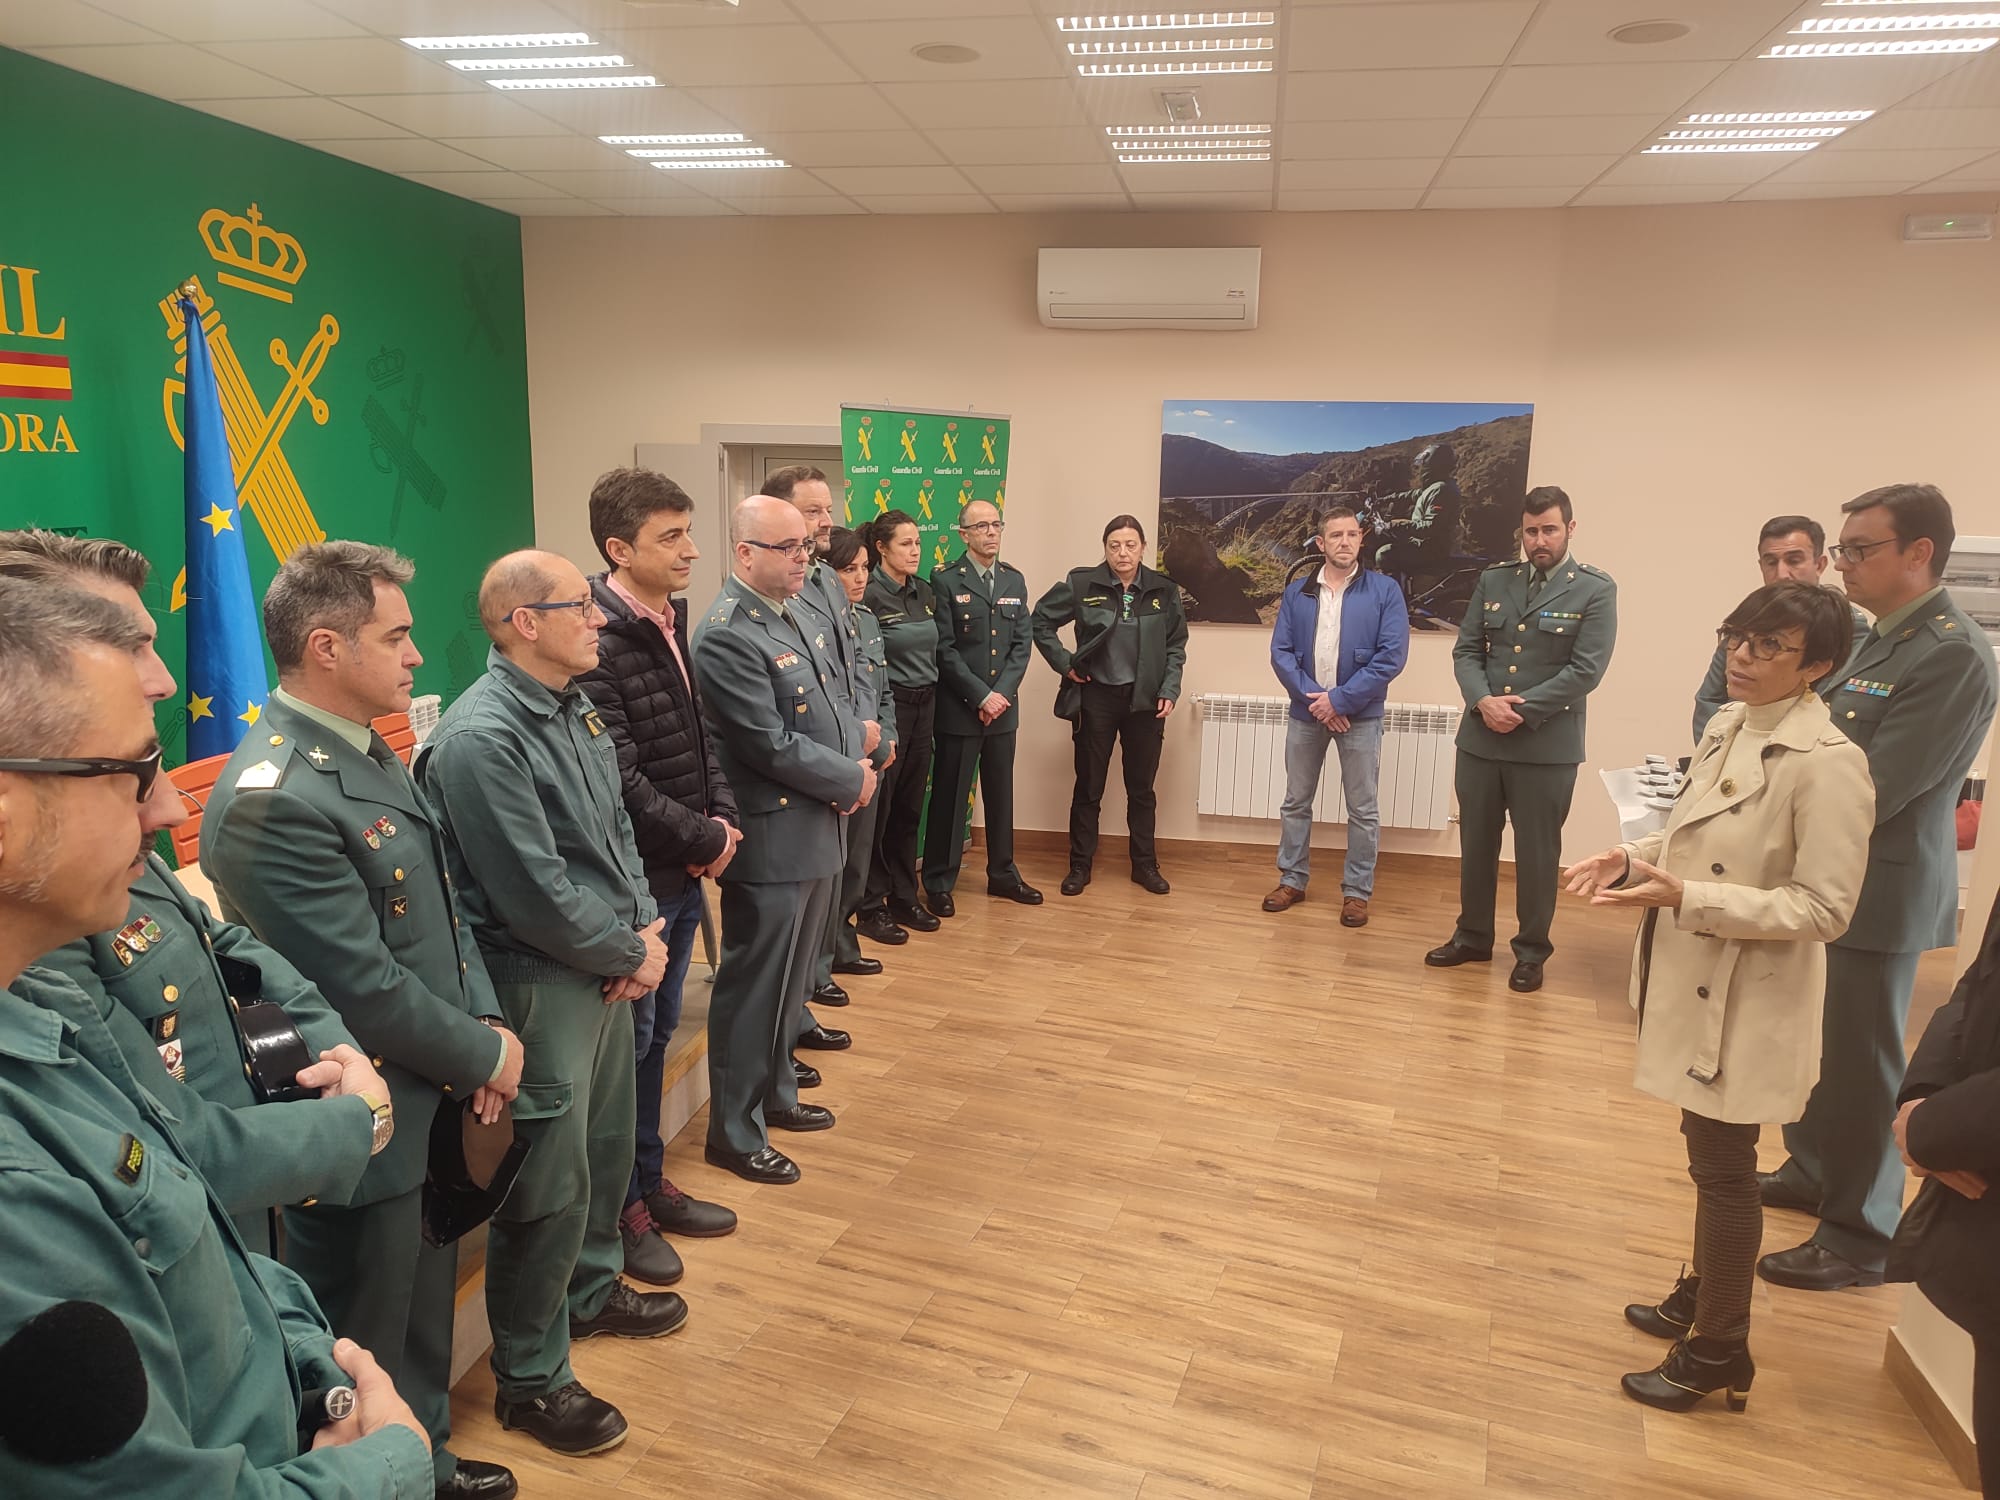 La directora general de la Guardia Civil presenta el proyecto del nuevo cuartel de Fuentesaúco (Zamora)